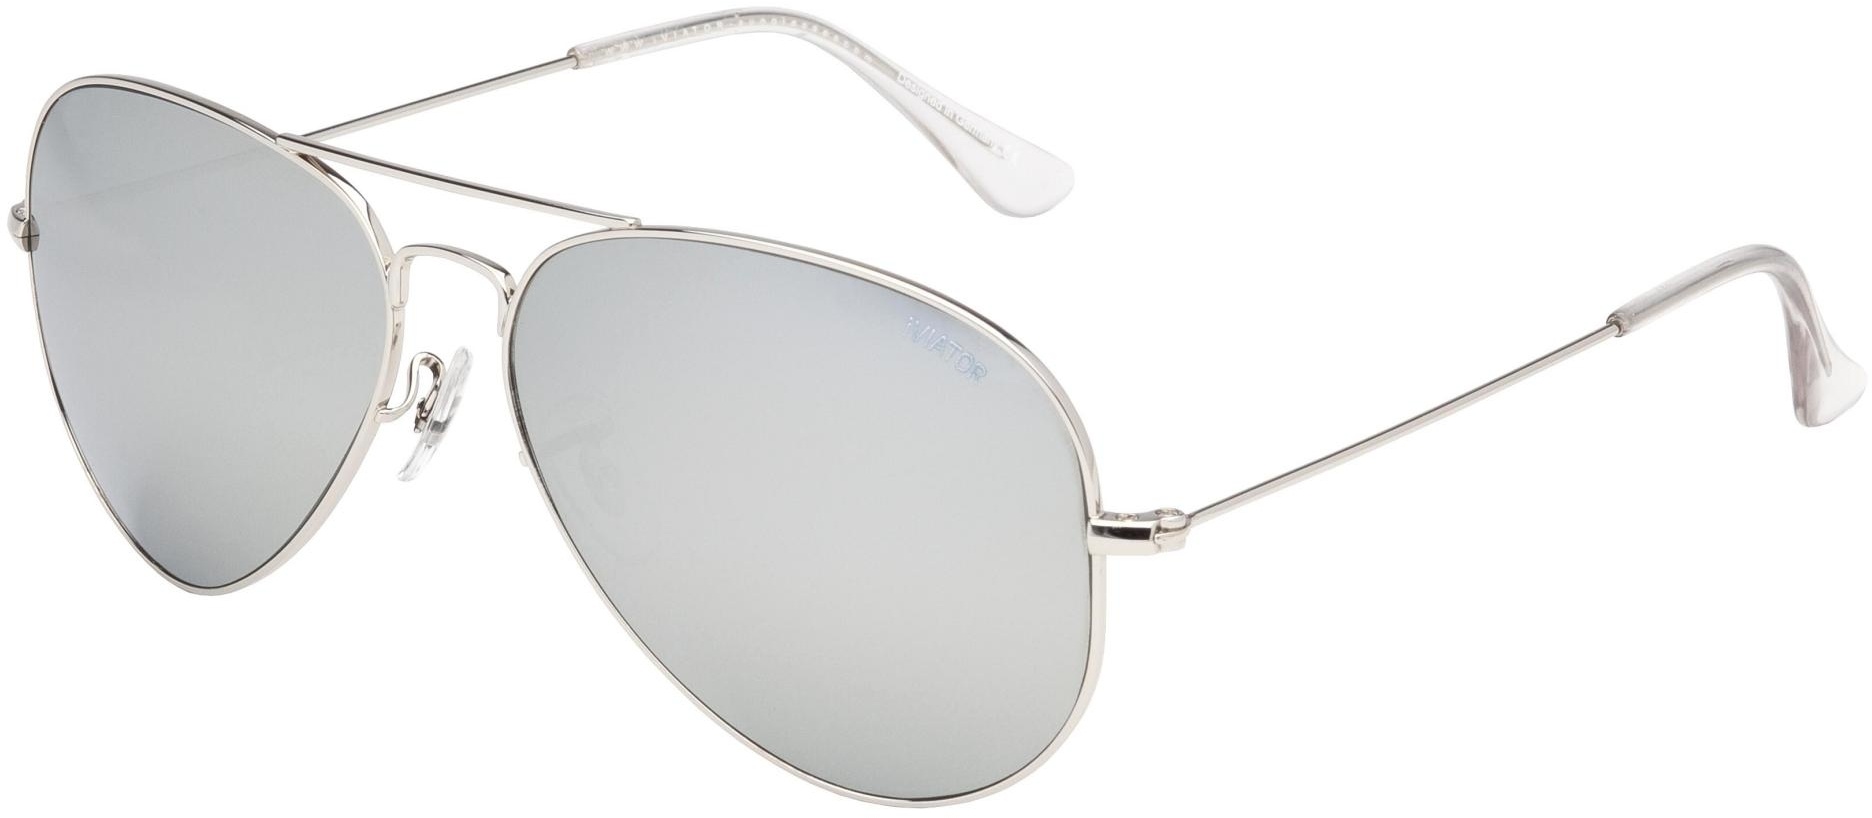 iVIATOR Sunglasses-Silver-127 Silver Mirror